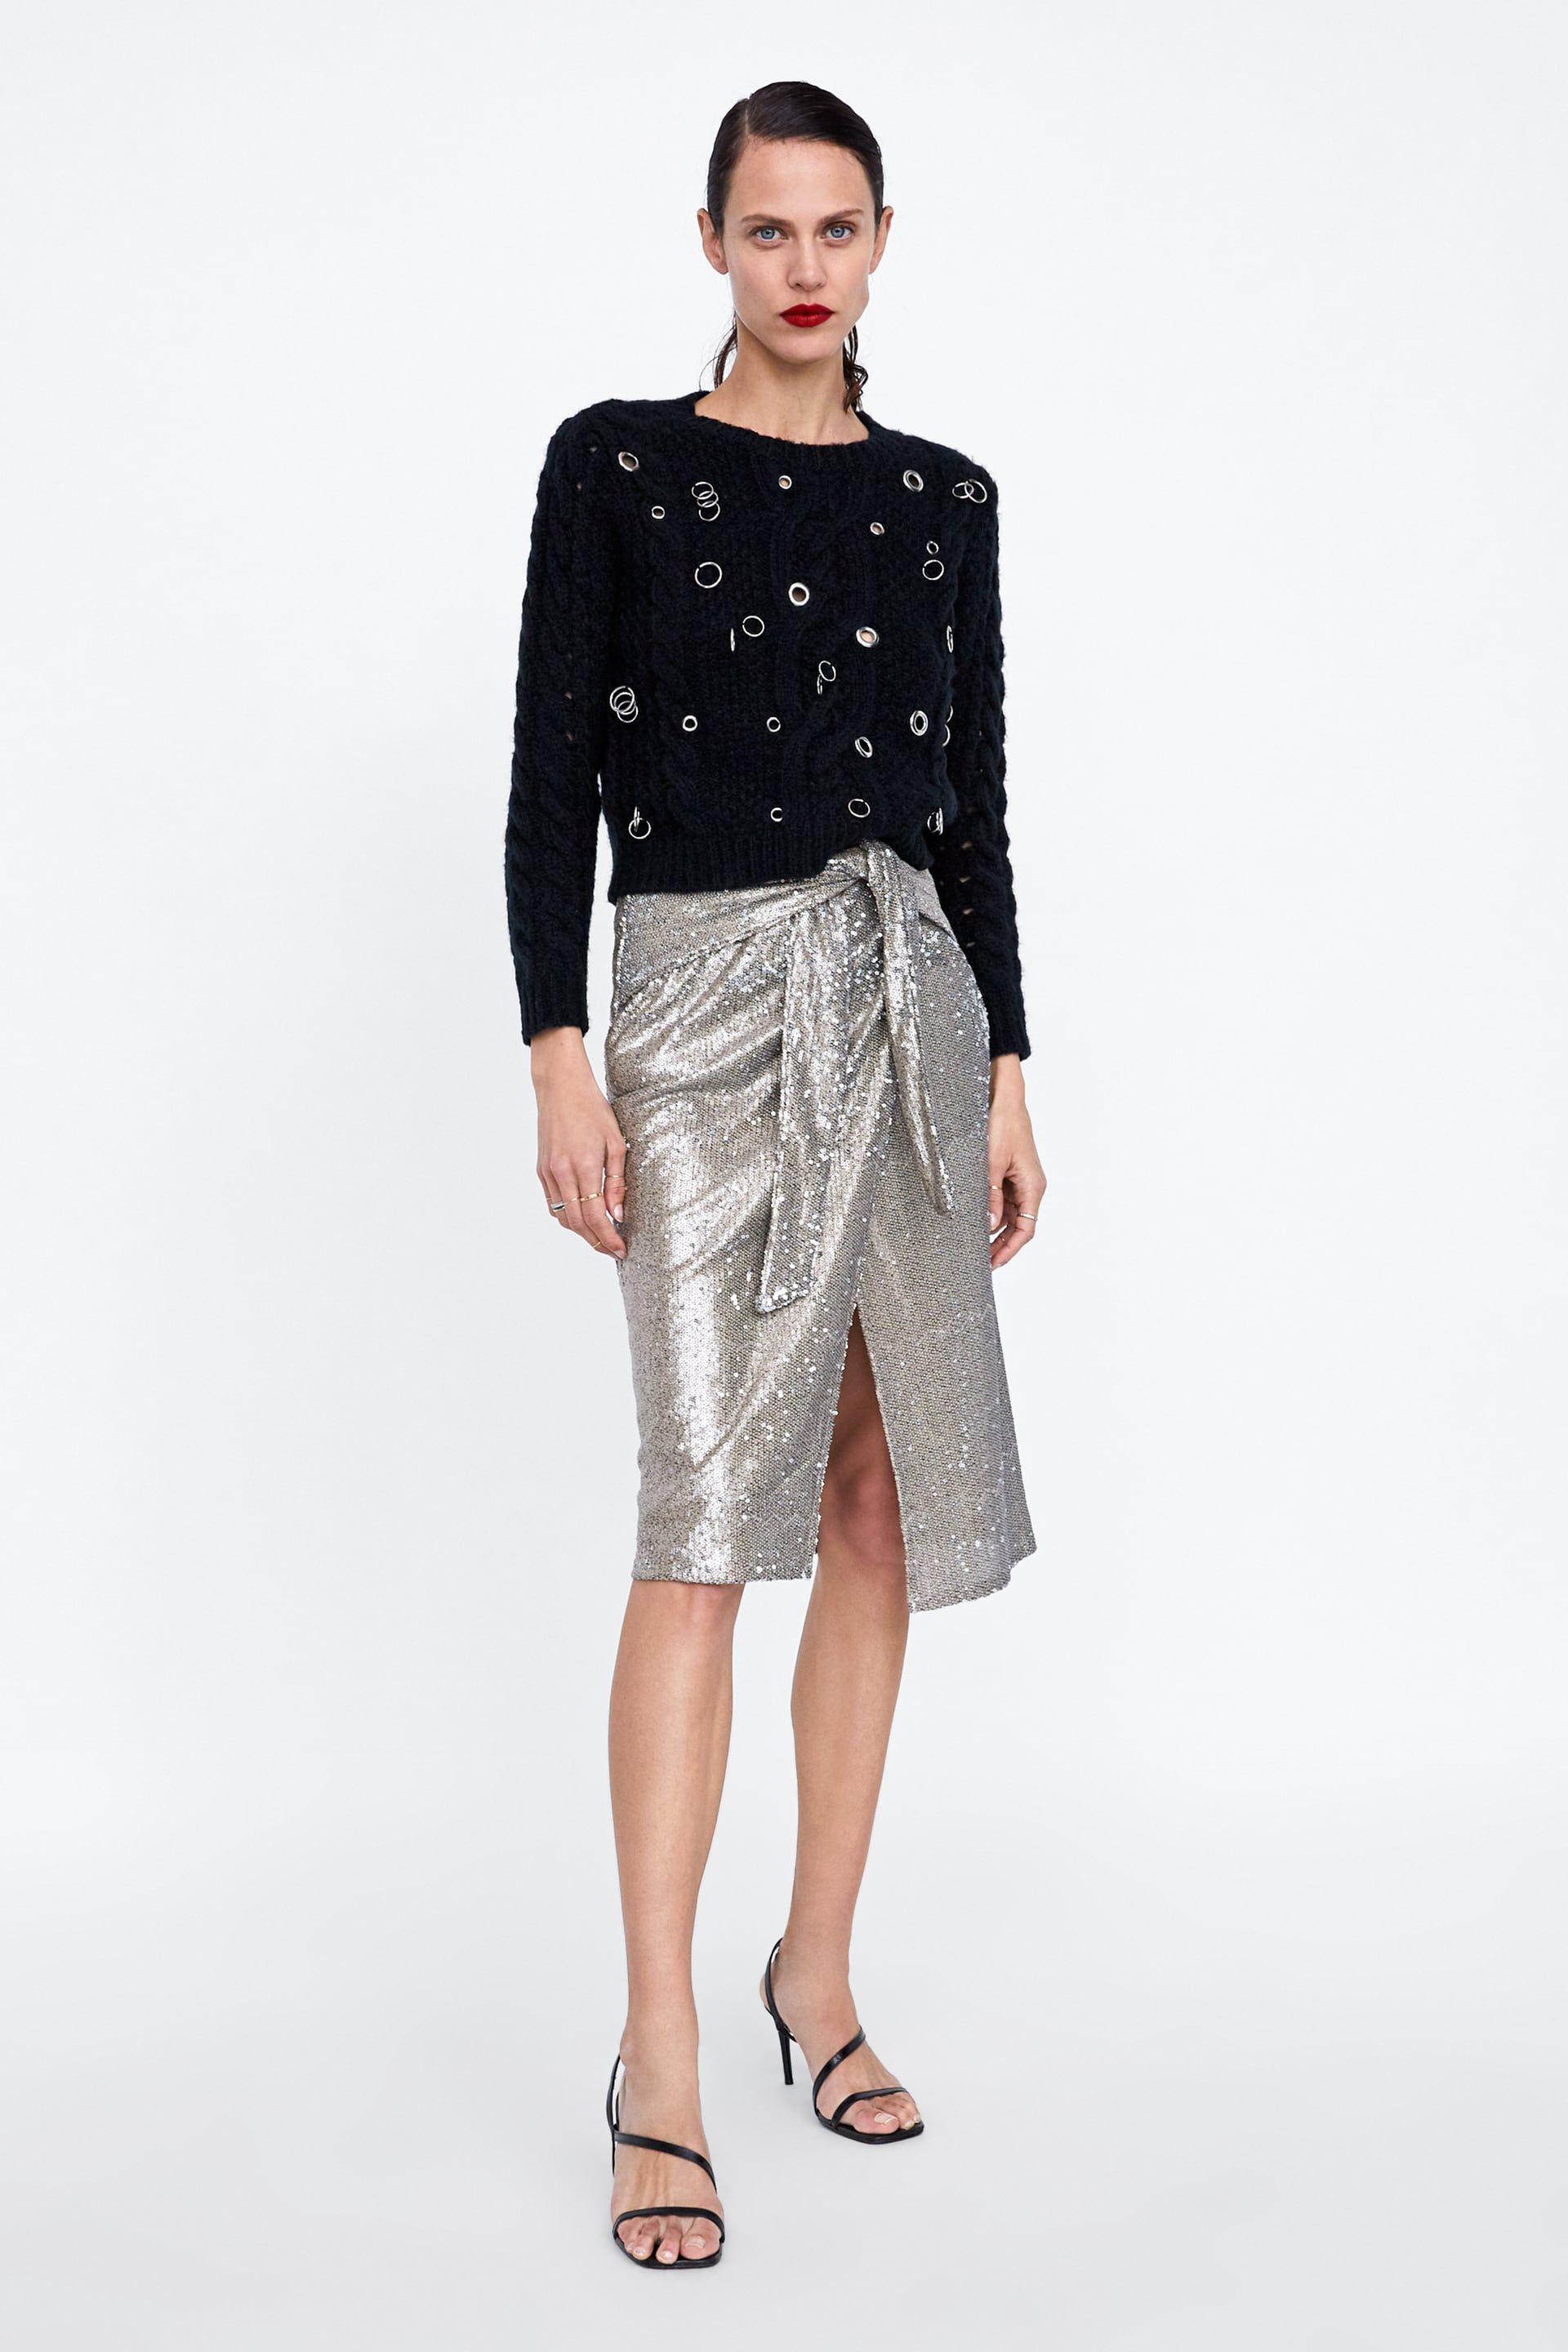 Telemacos Redondear a la baja término análogo Zara tiene claro lo que llevarás en tu próxima fiesta: una falda midi de  lentejuelas